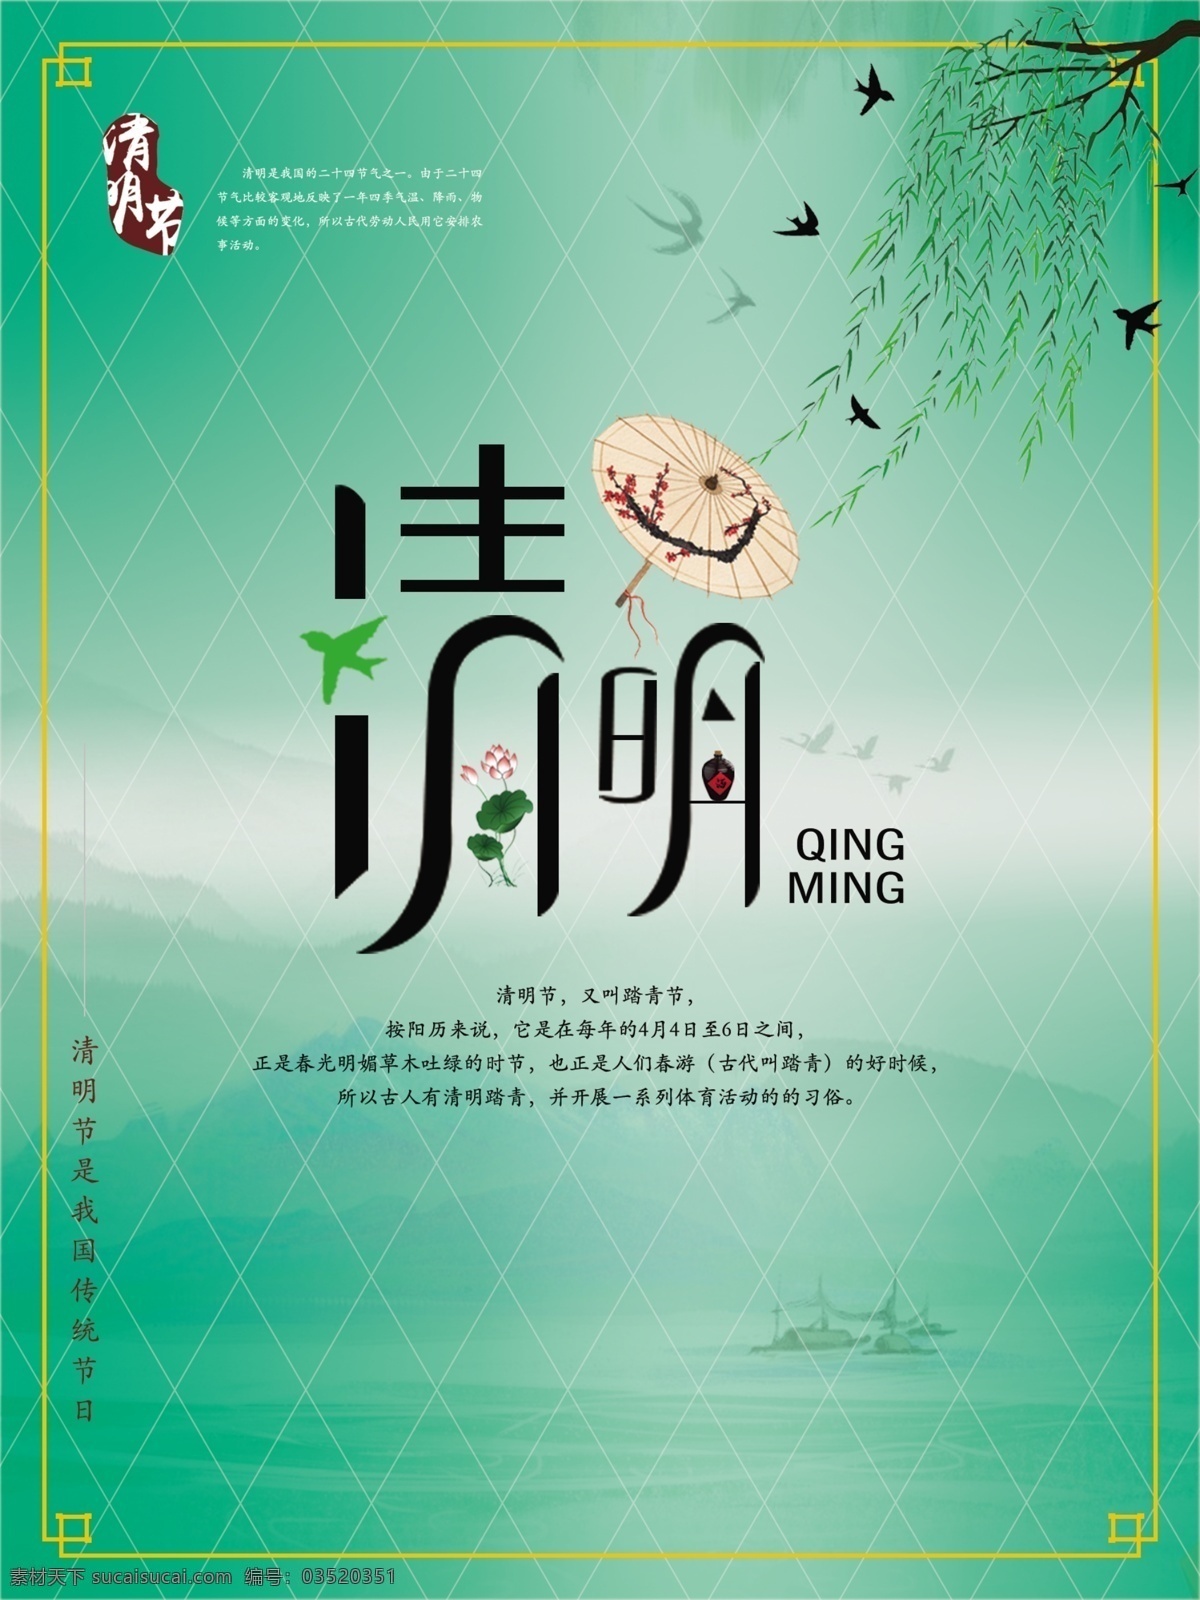 清明海报 绿色 清明 海报 中国传统节日 祭祀